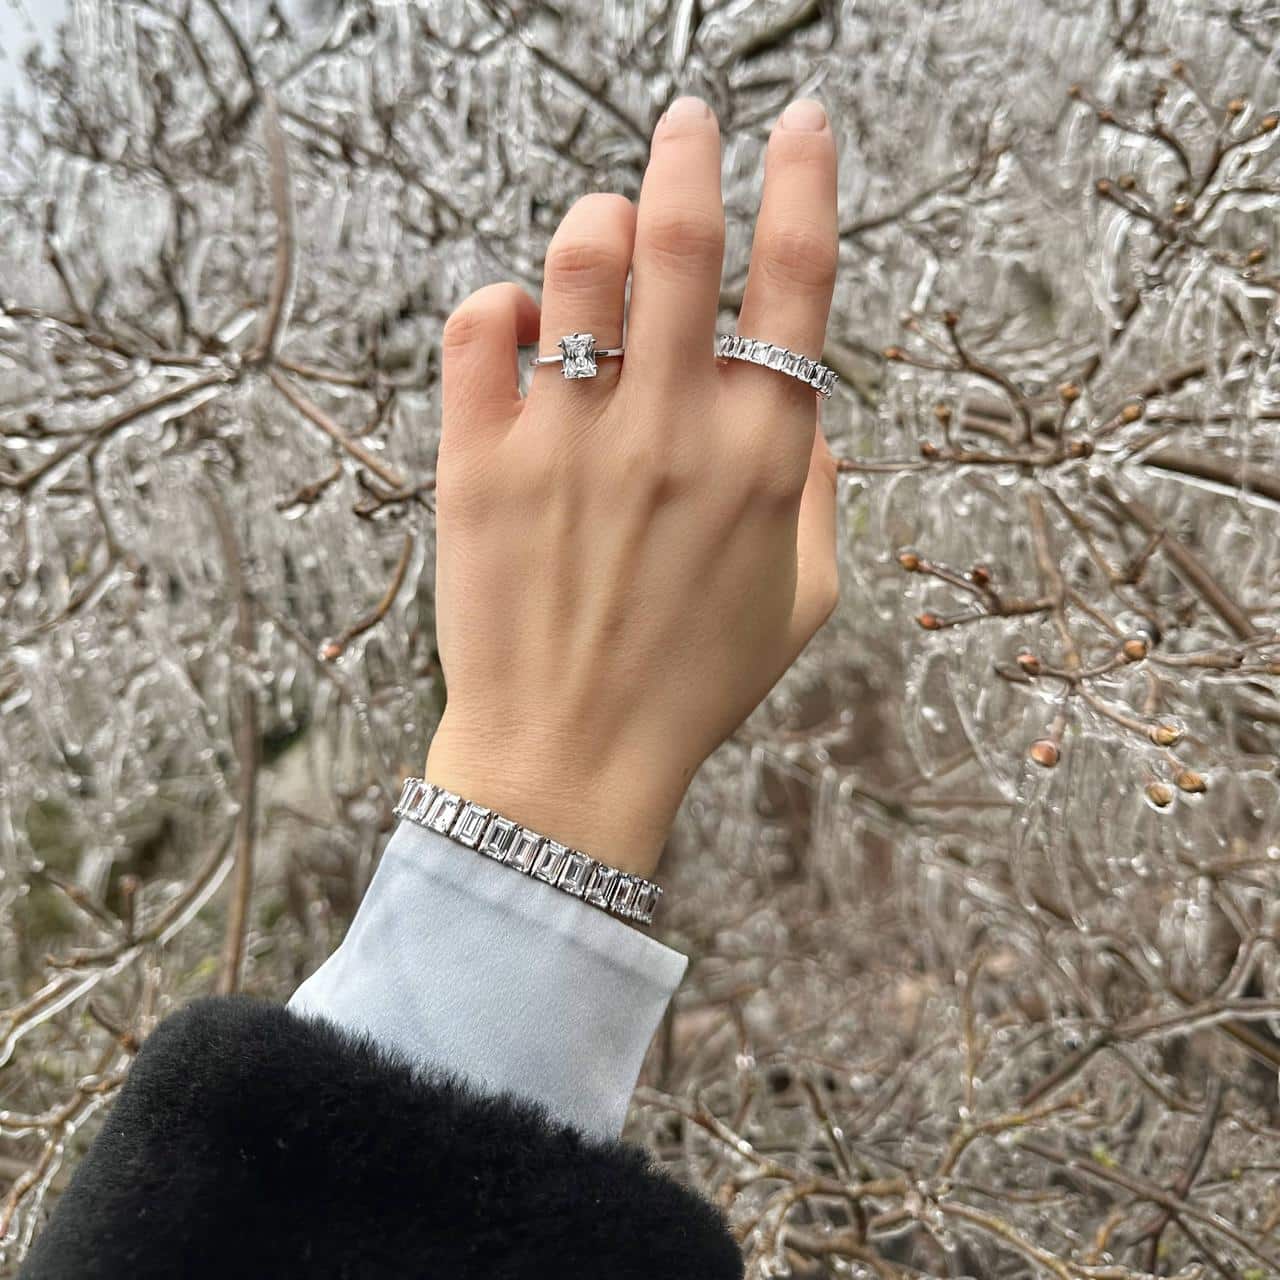 Ein besonders Armband im klassischen Design zu passenden Fingerringen getragen im märchenhaften Grindelwald